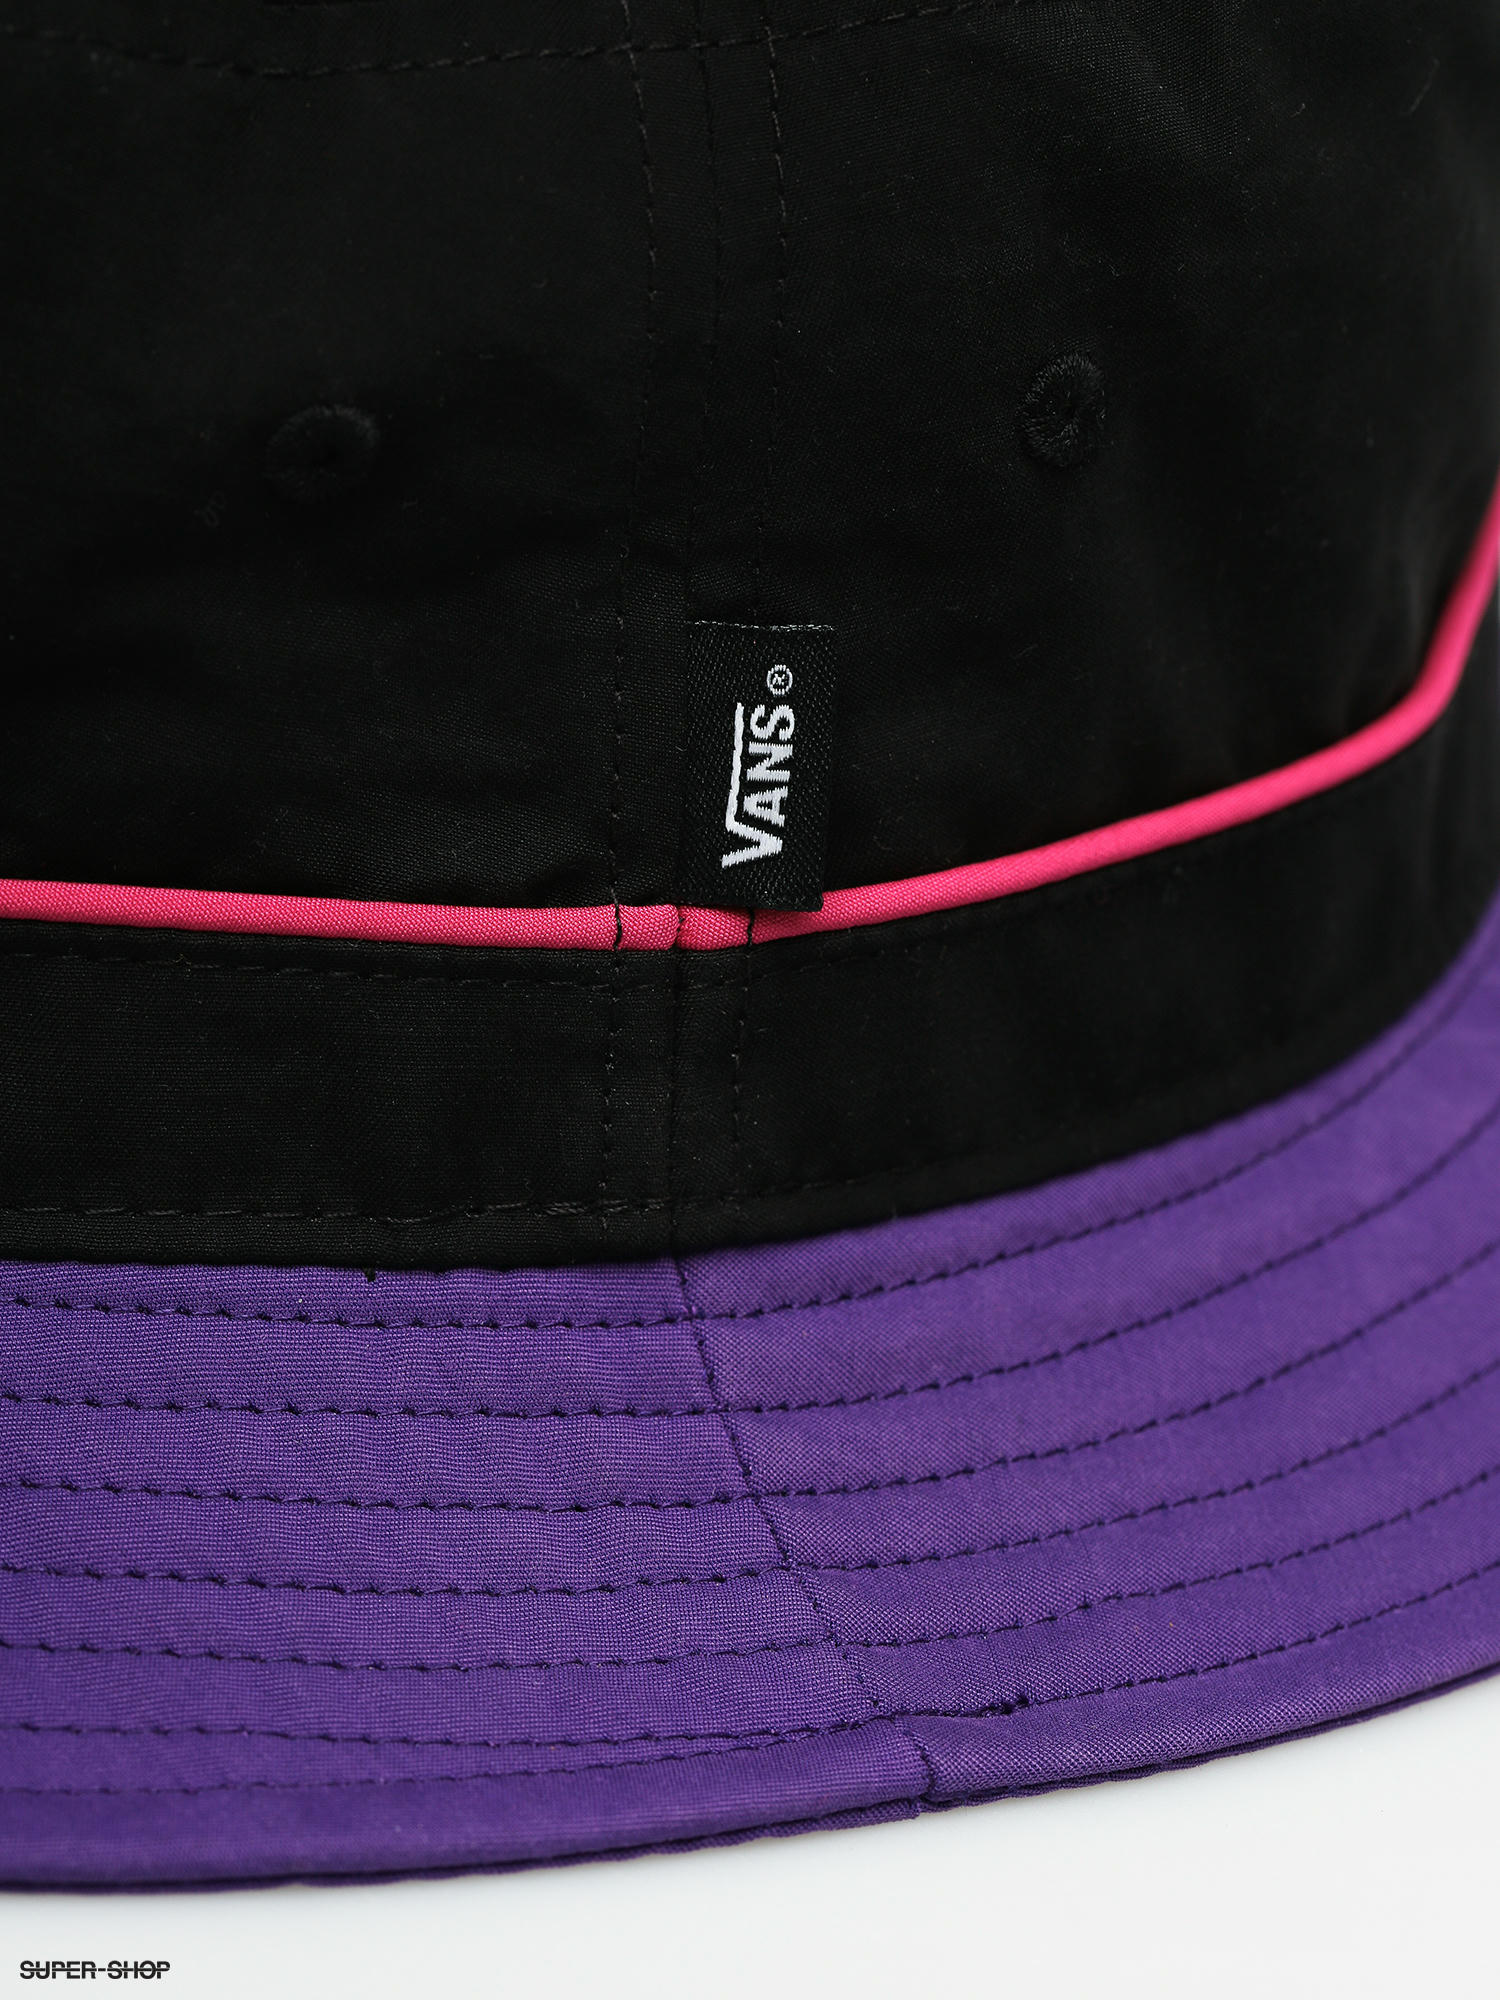 purple vans hat